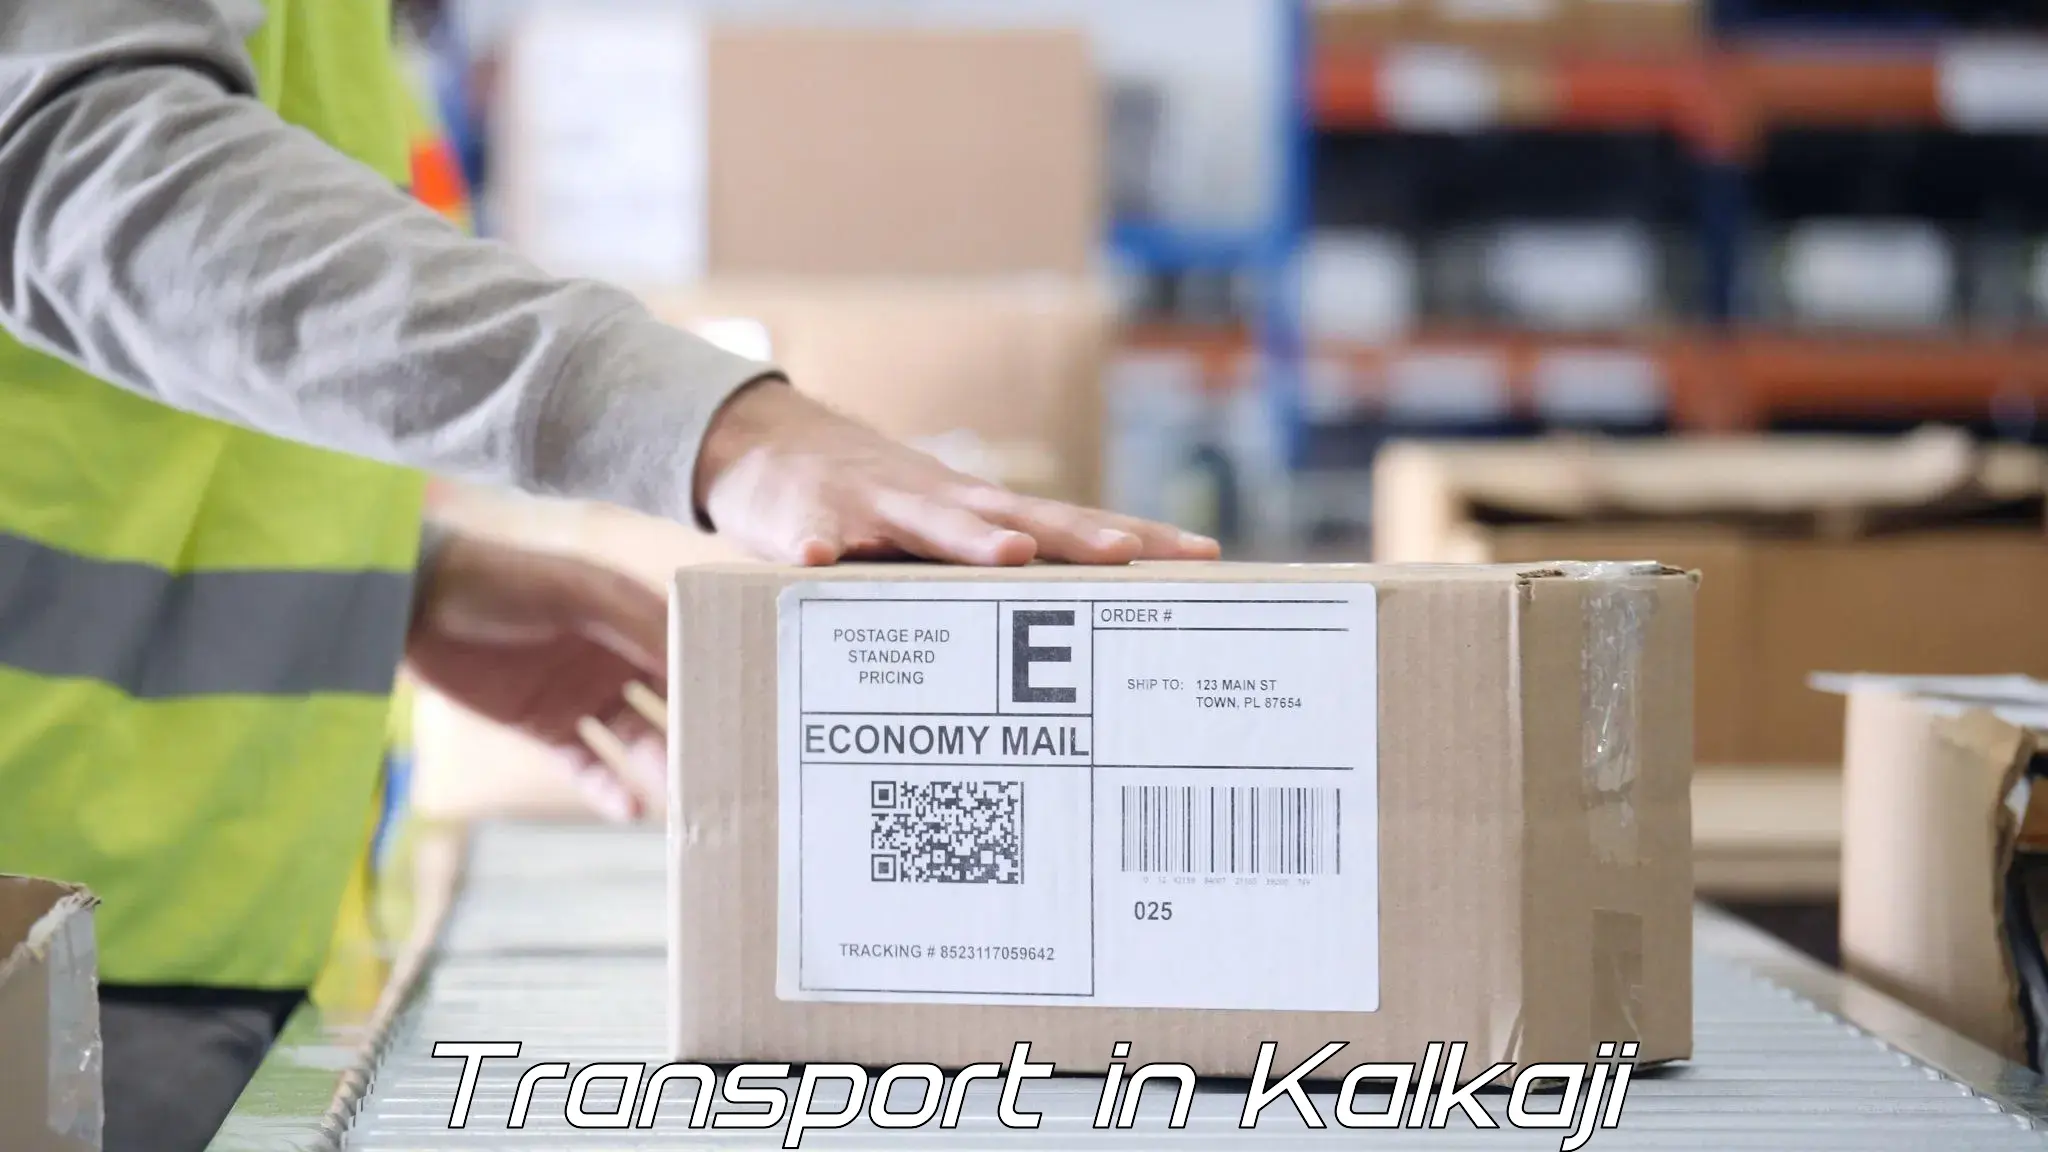 Interstate goods transport in Kalkaji